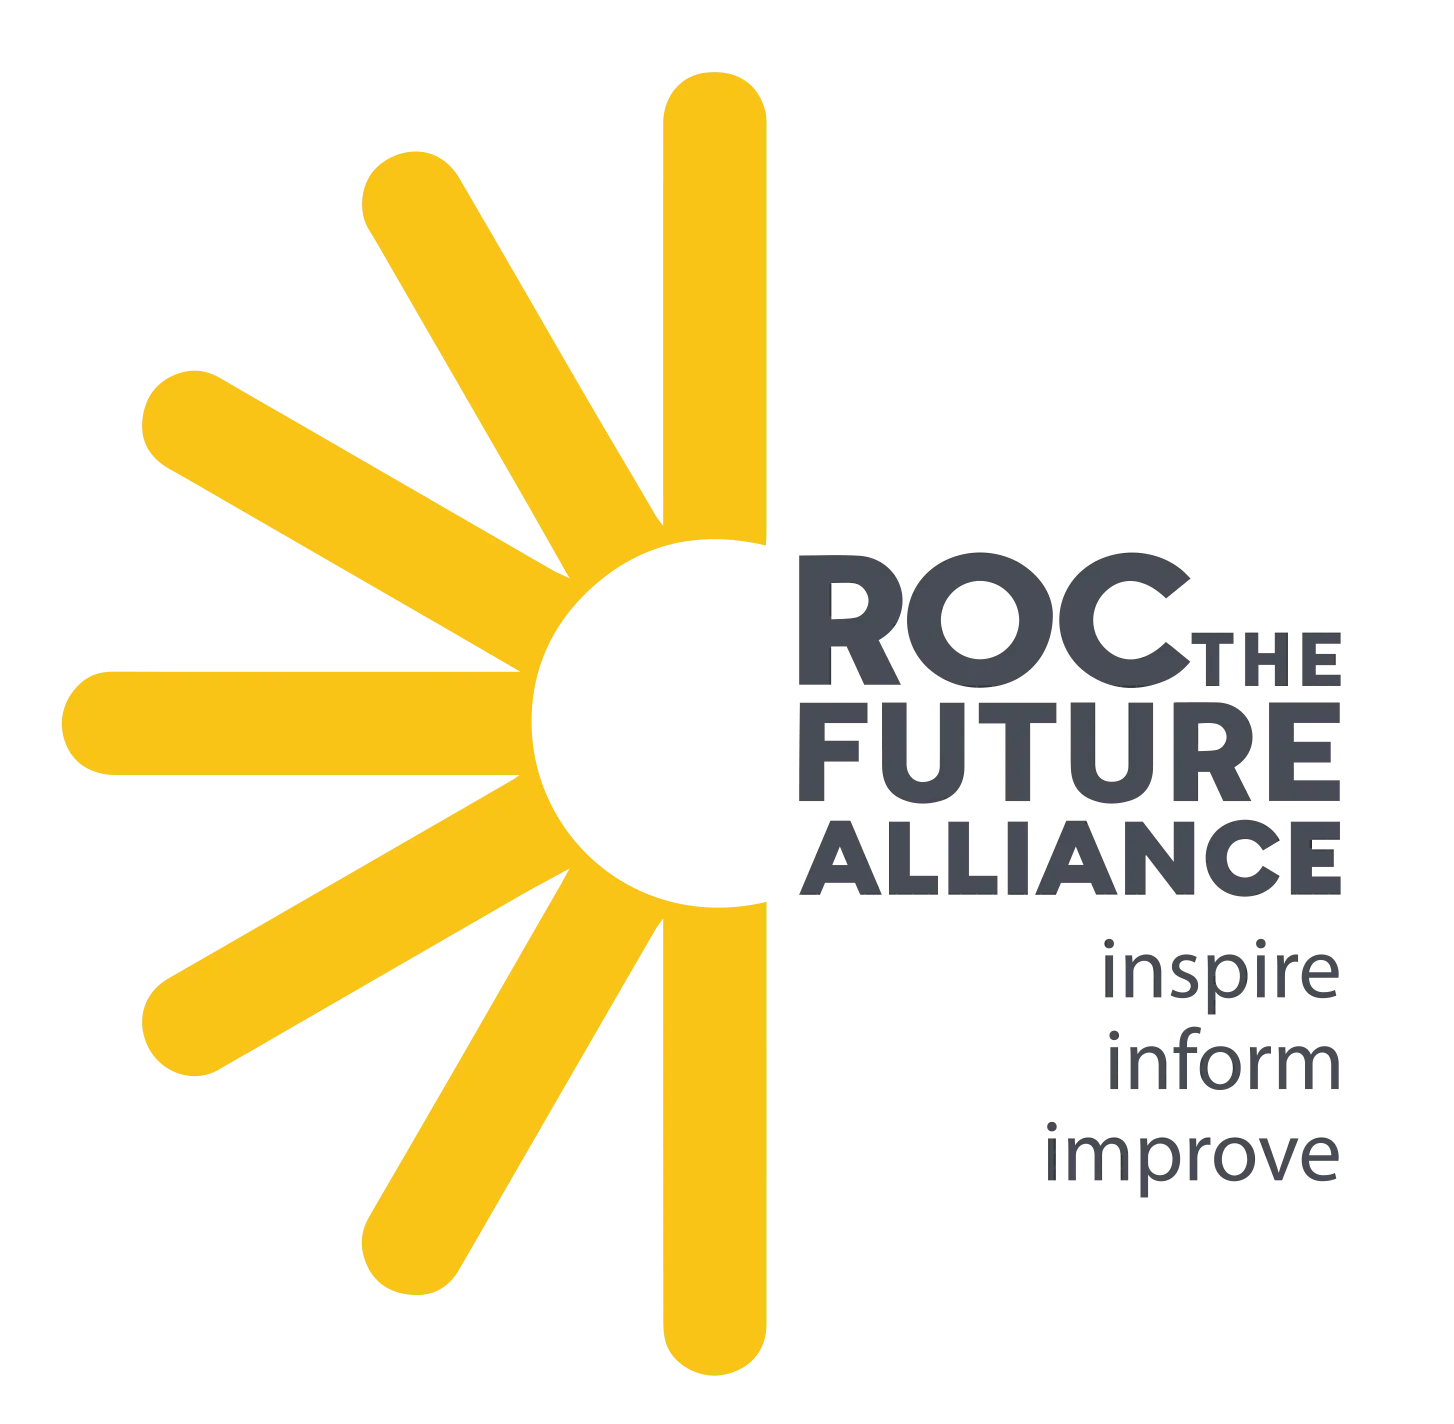 ROC the Future Alliance